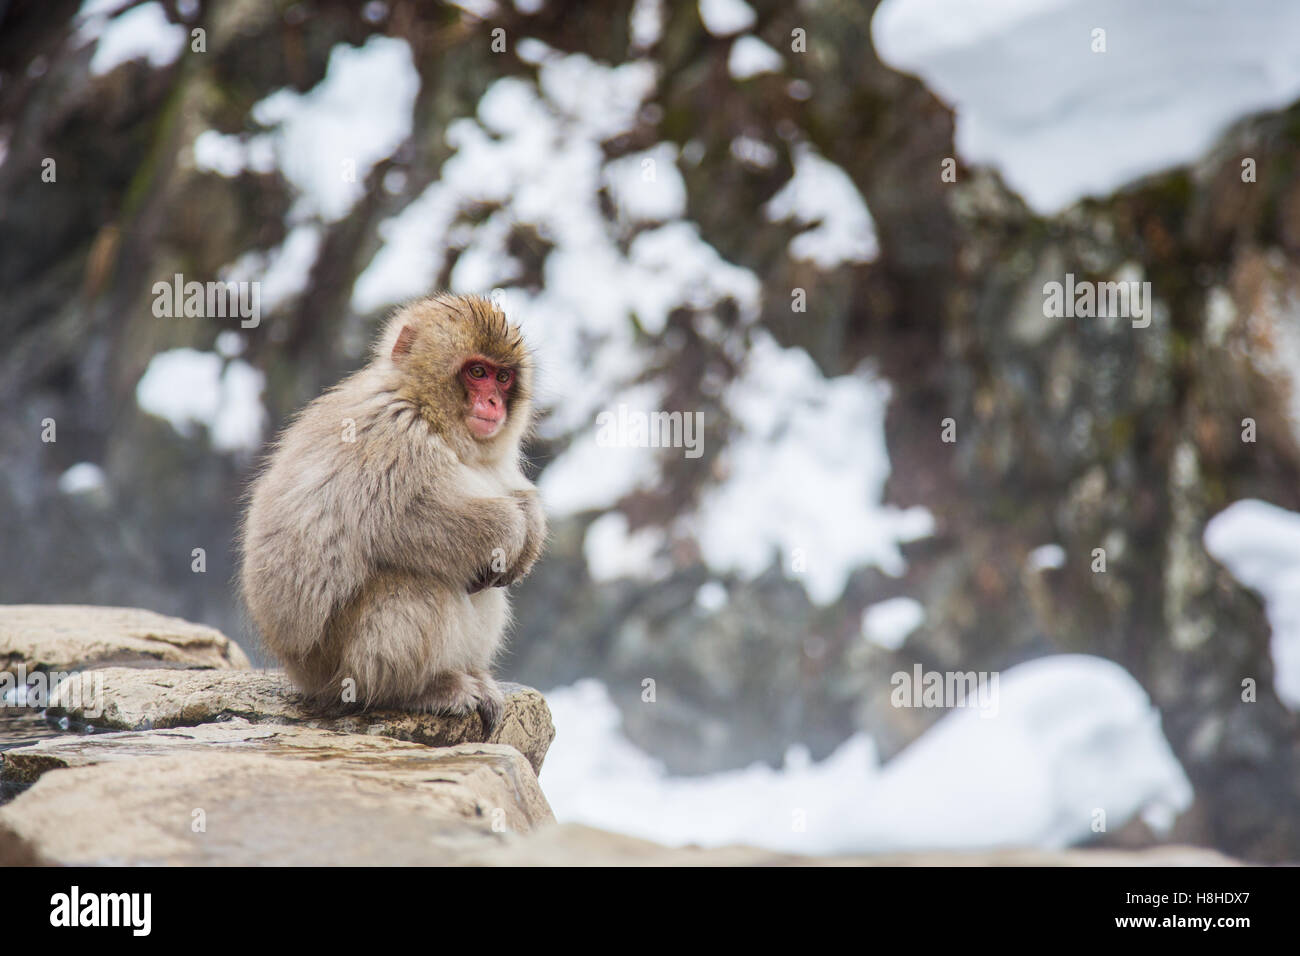 Snow monkey dans un onsen (source chaude), situé dans la région de Jigokudani Park, Yudanaka. Nagano au Japon. Banque D'Images